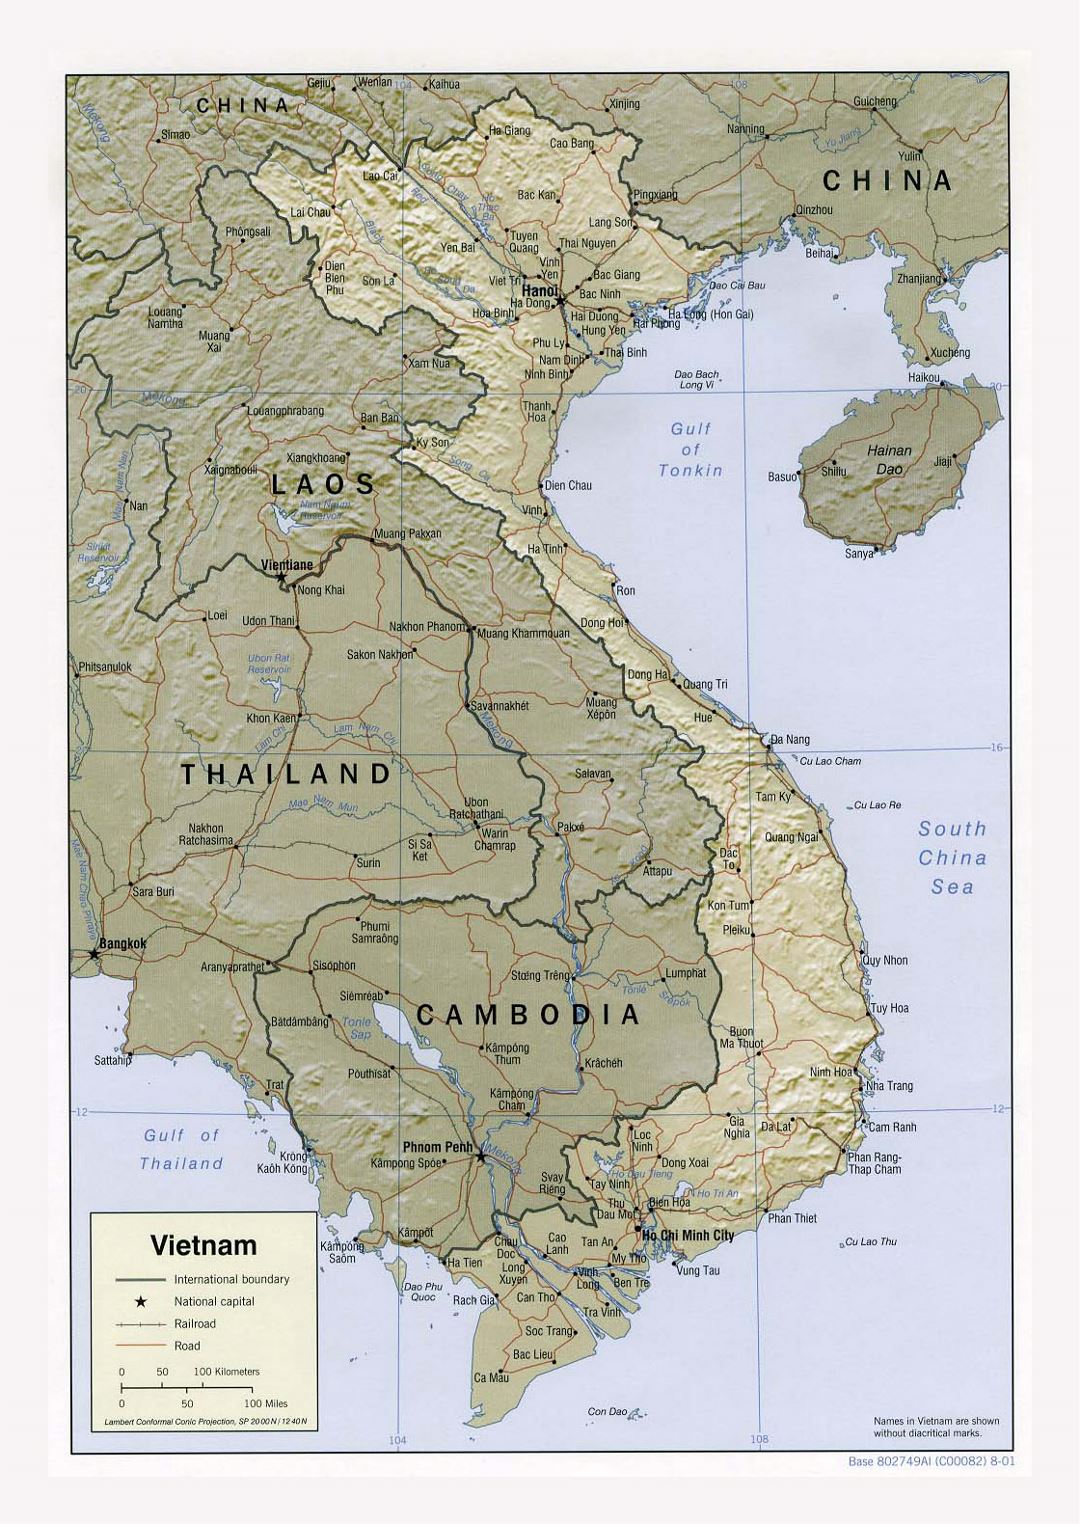 Детальная политическая карта Вьетнама с рельефом, дорогами, железными дорогами и крупными городами - 2001